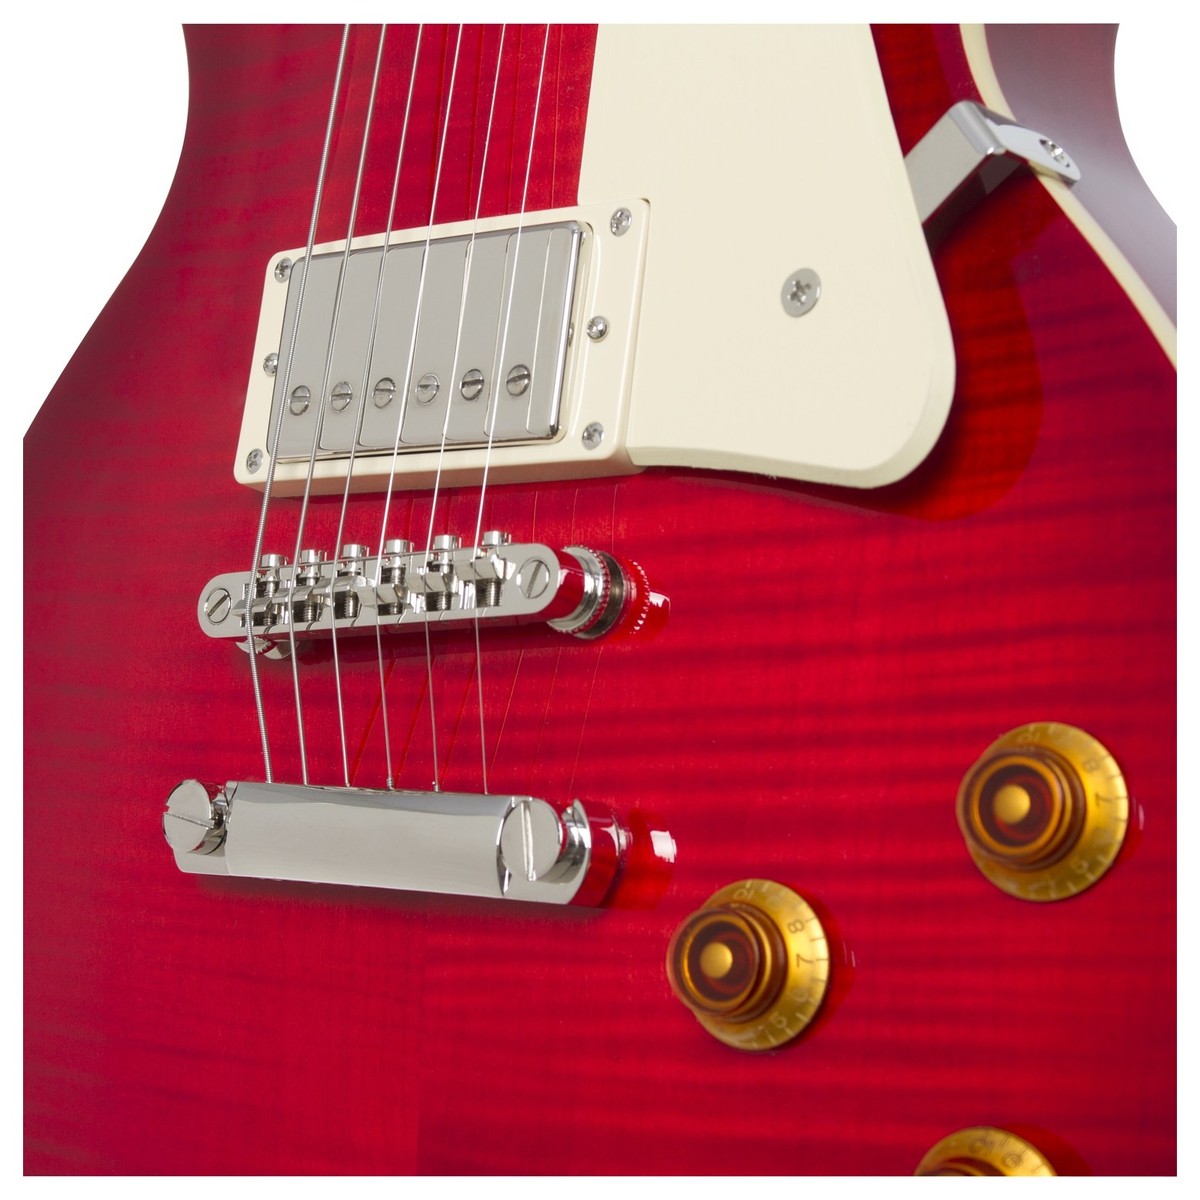 Epiphone Les Paul Standard Plus Top Pro Hh Ht Pf - Blood Orange - Single cut electric guitar - Variation 3